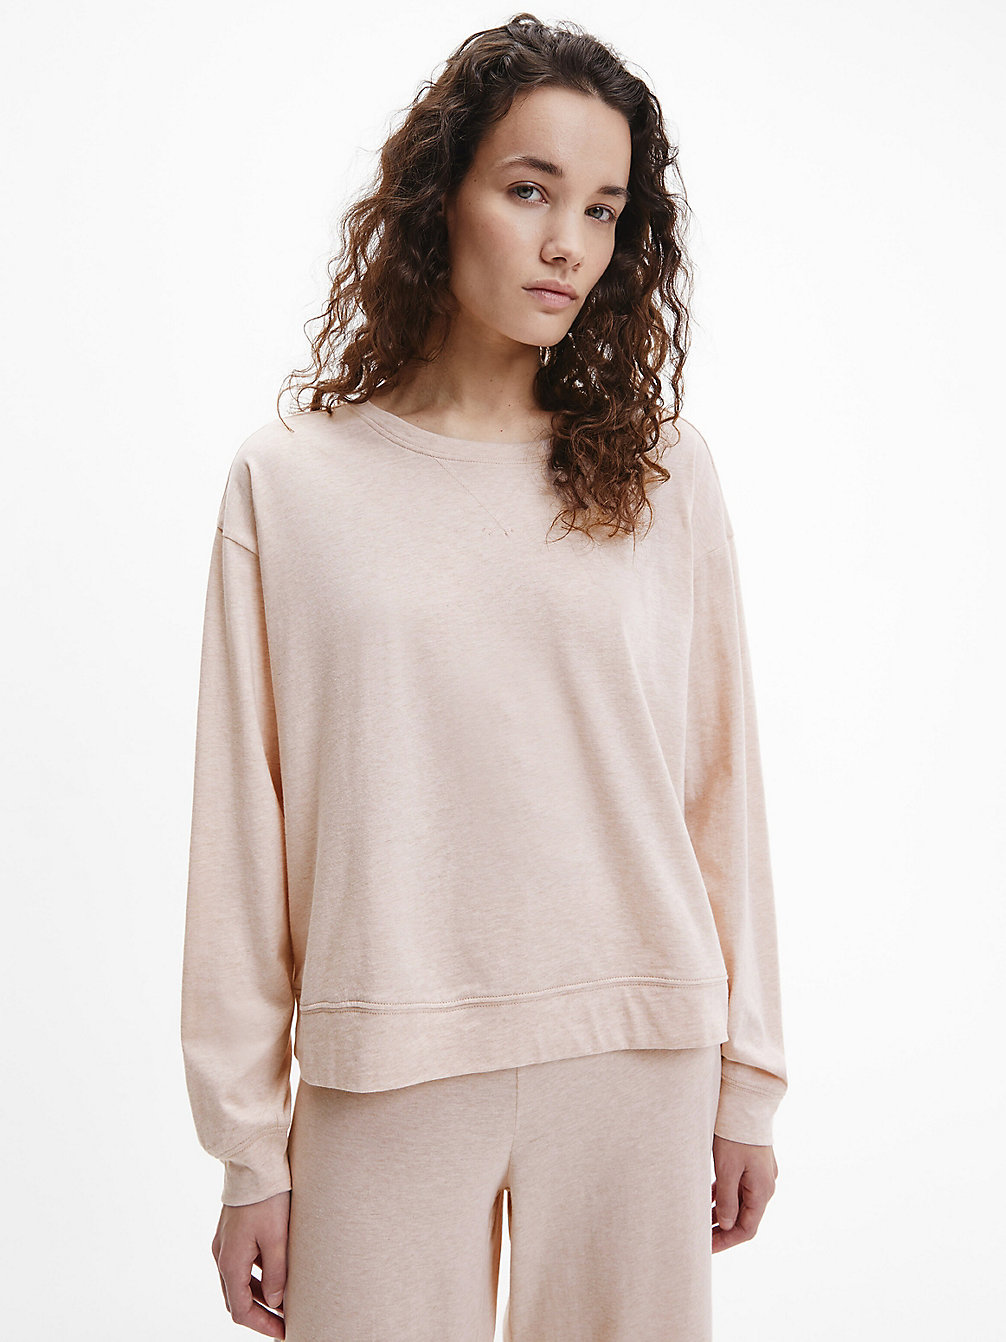 CEDAR HEATHER Lounge Sweatshirt - Form To Body undefined women Calvin Klein